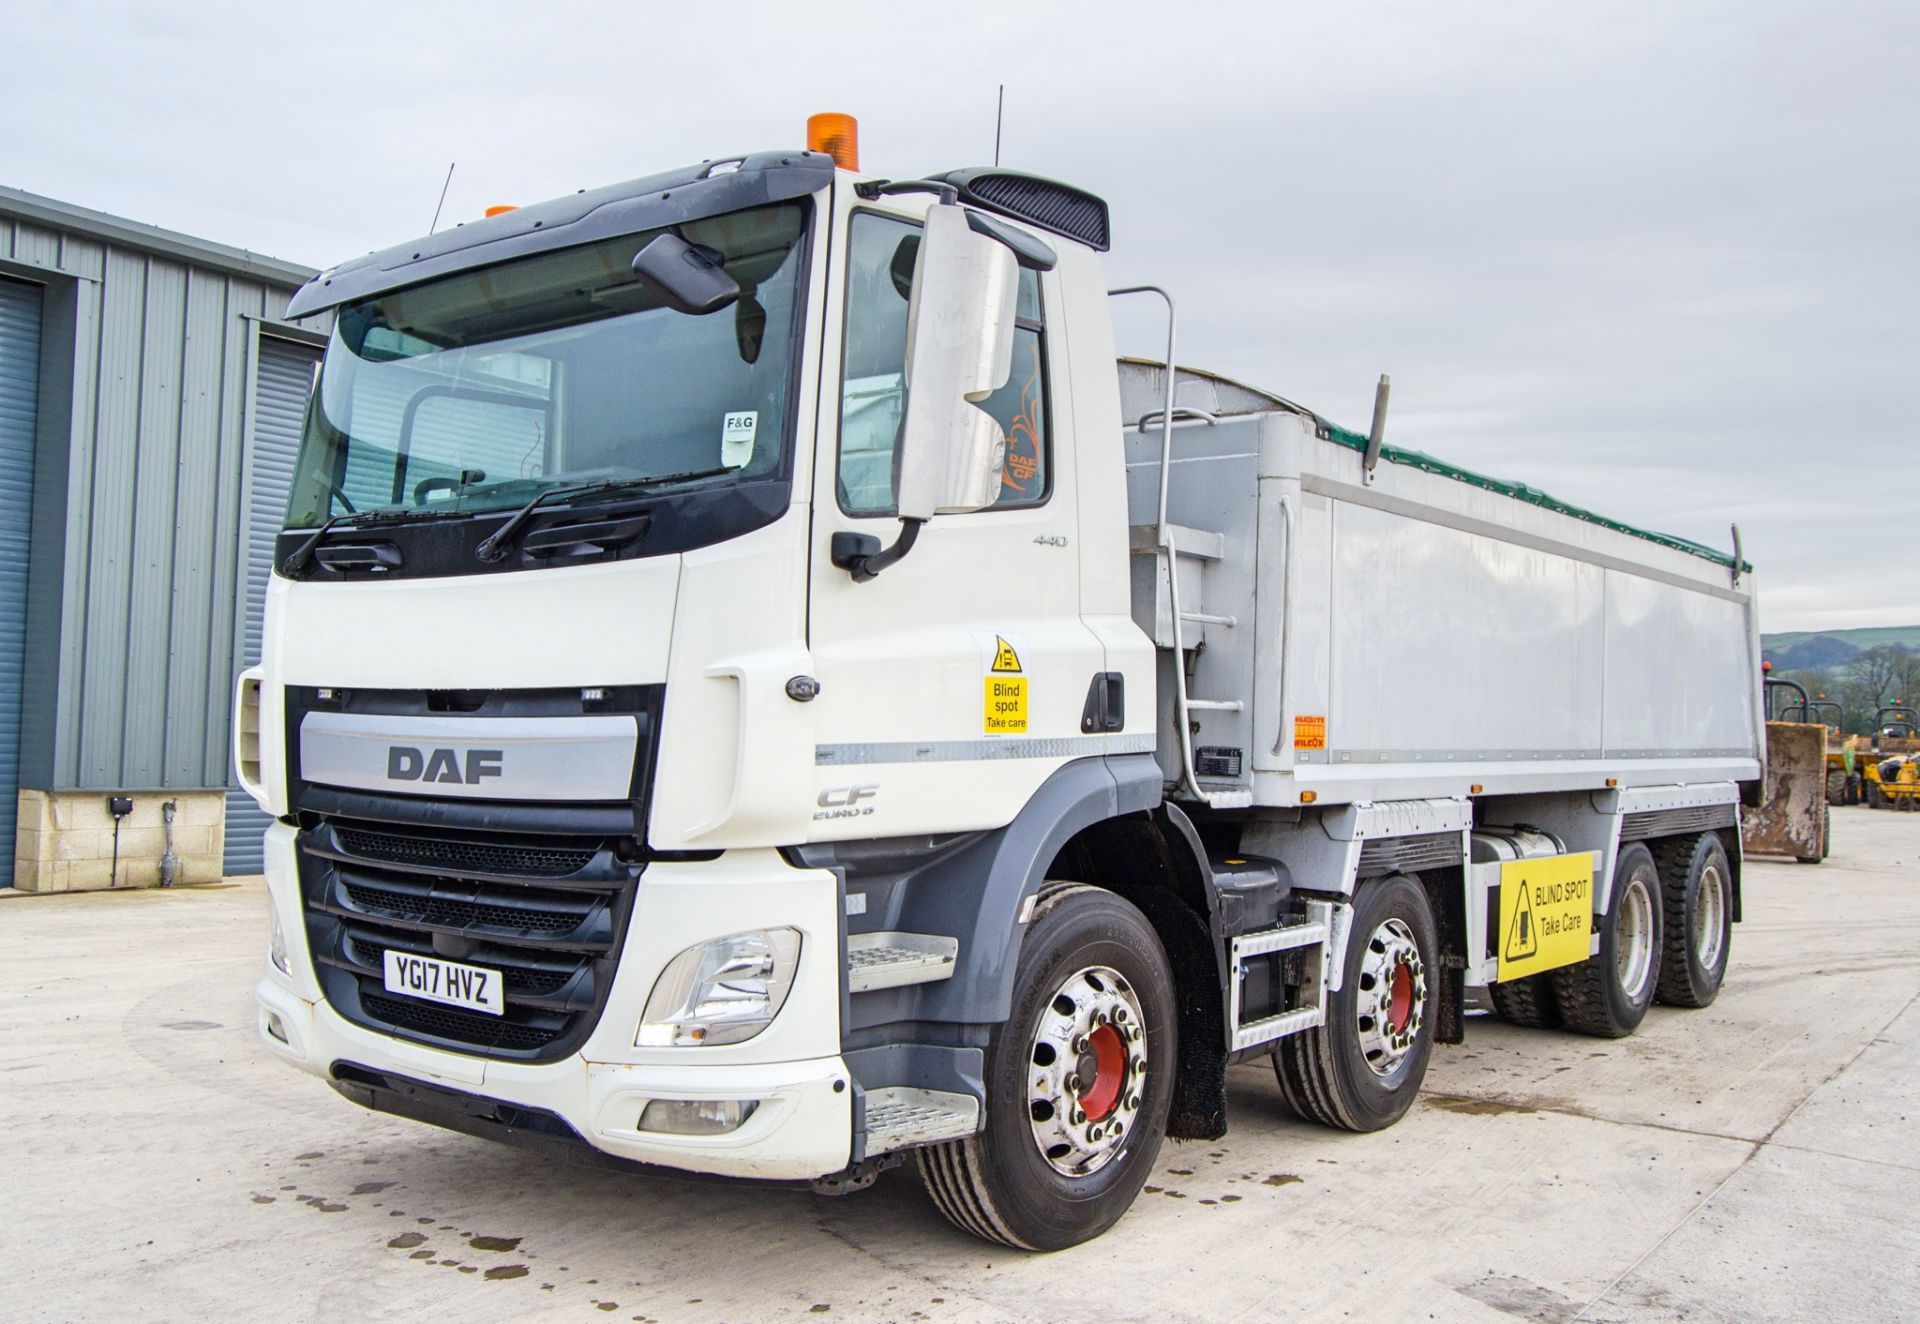 DAF 440 CF Euro 6 8x4 32 tonne tipper lorry Registration Number: YG17 HVZ Date of Registration: 10/